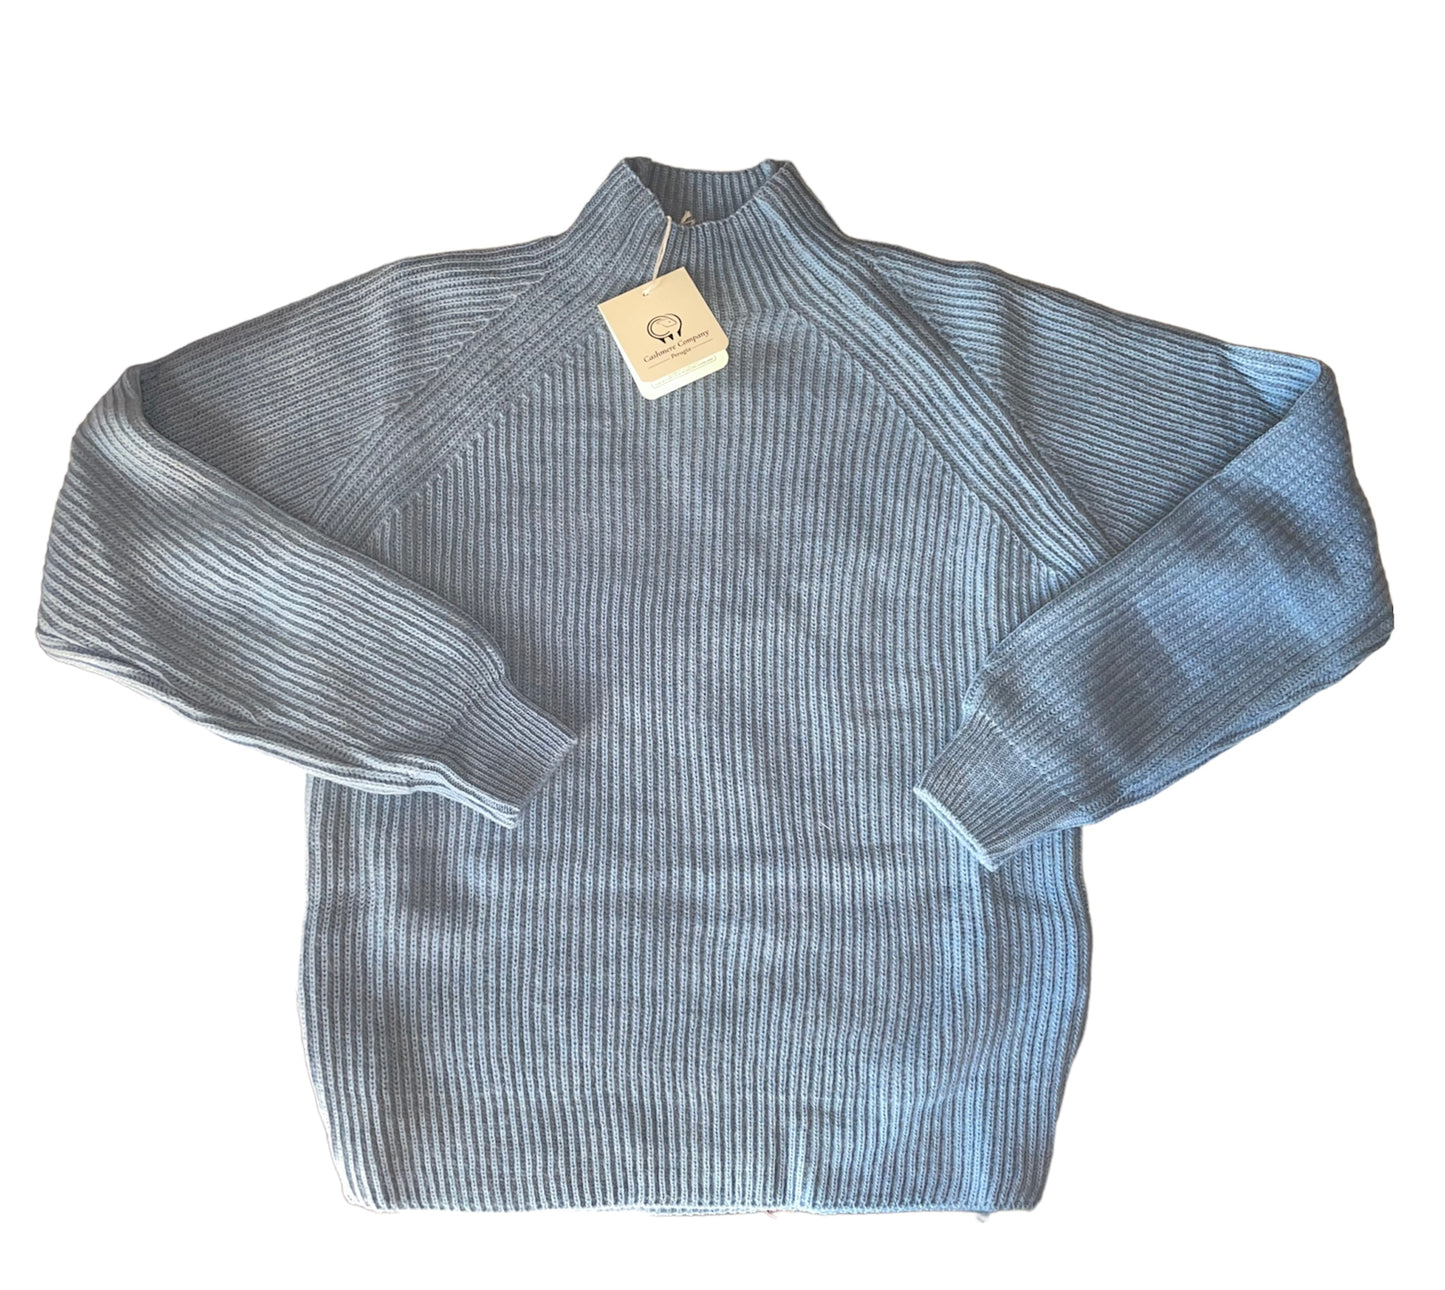 Cashmere Company maglia donna lana e alpaca azzurro dolcevita costa Inglese